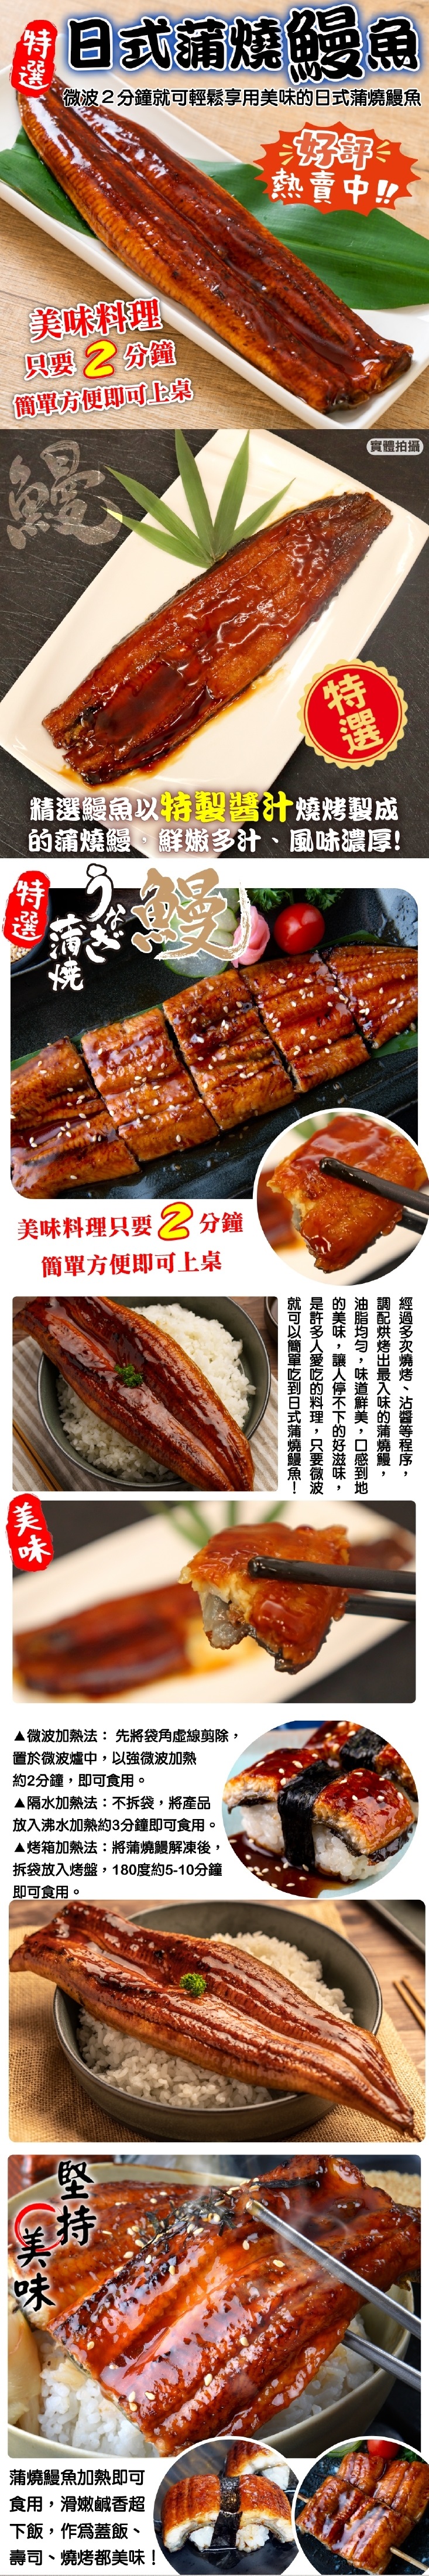 【海肉管家】日式蒲燒鰻魚180g